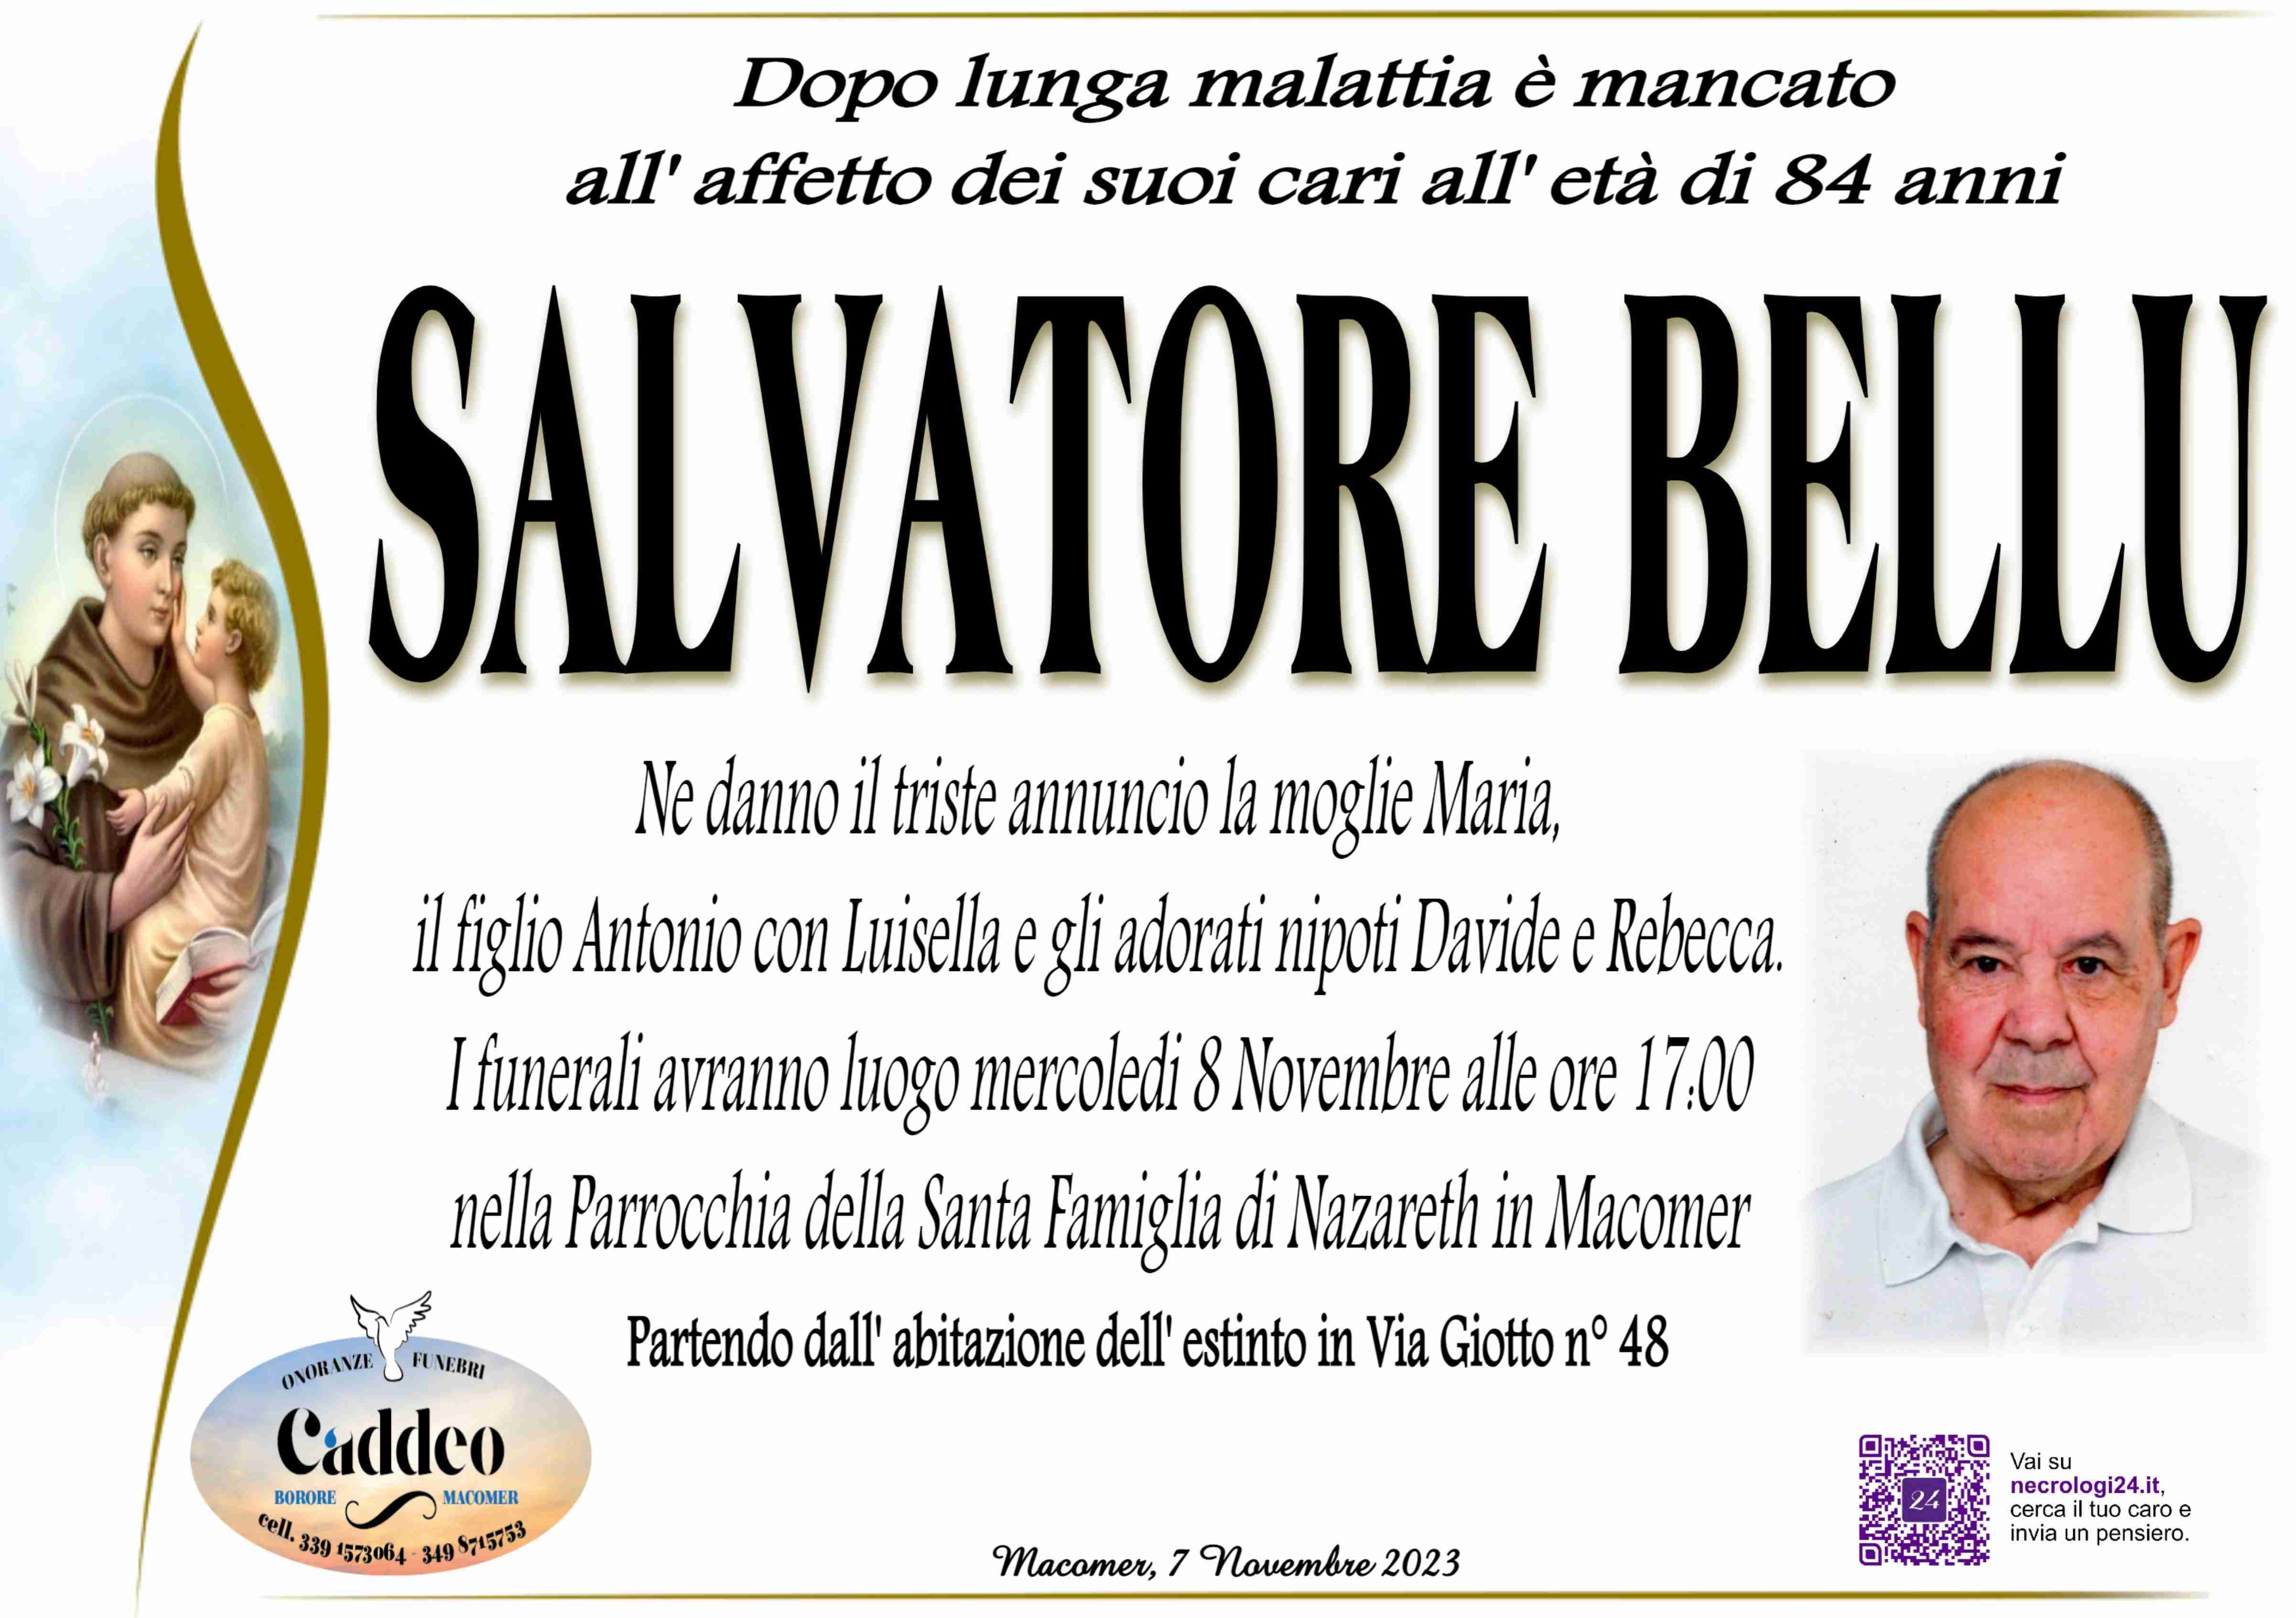 Salvatore Bellu